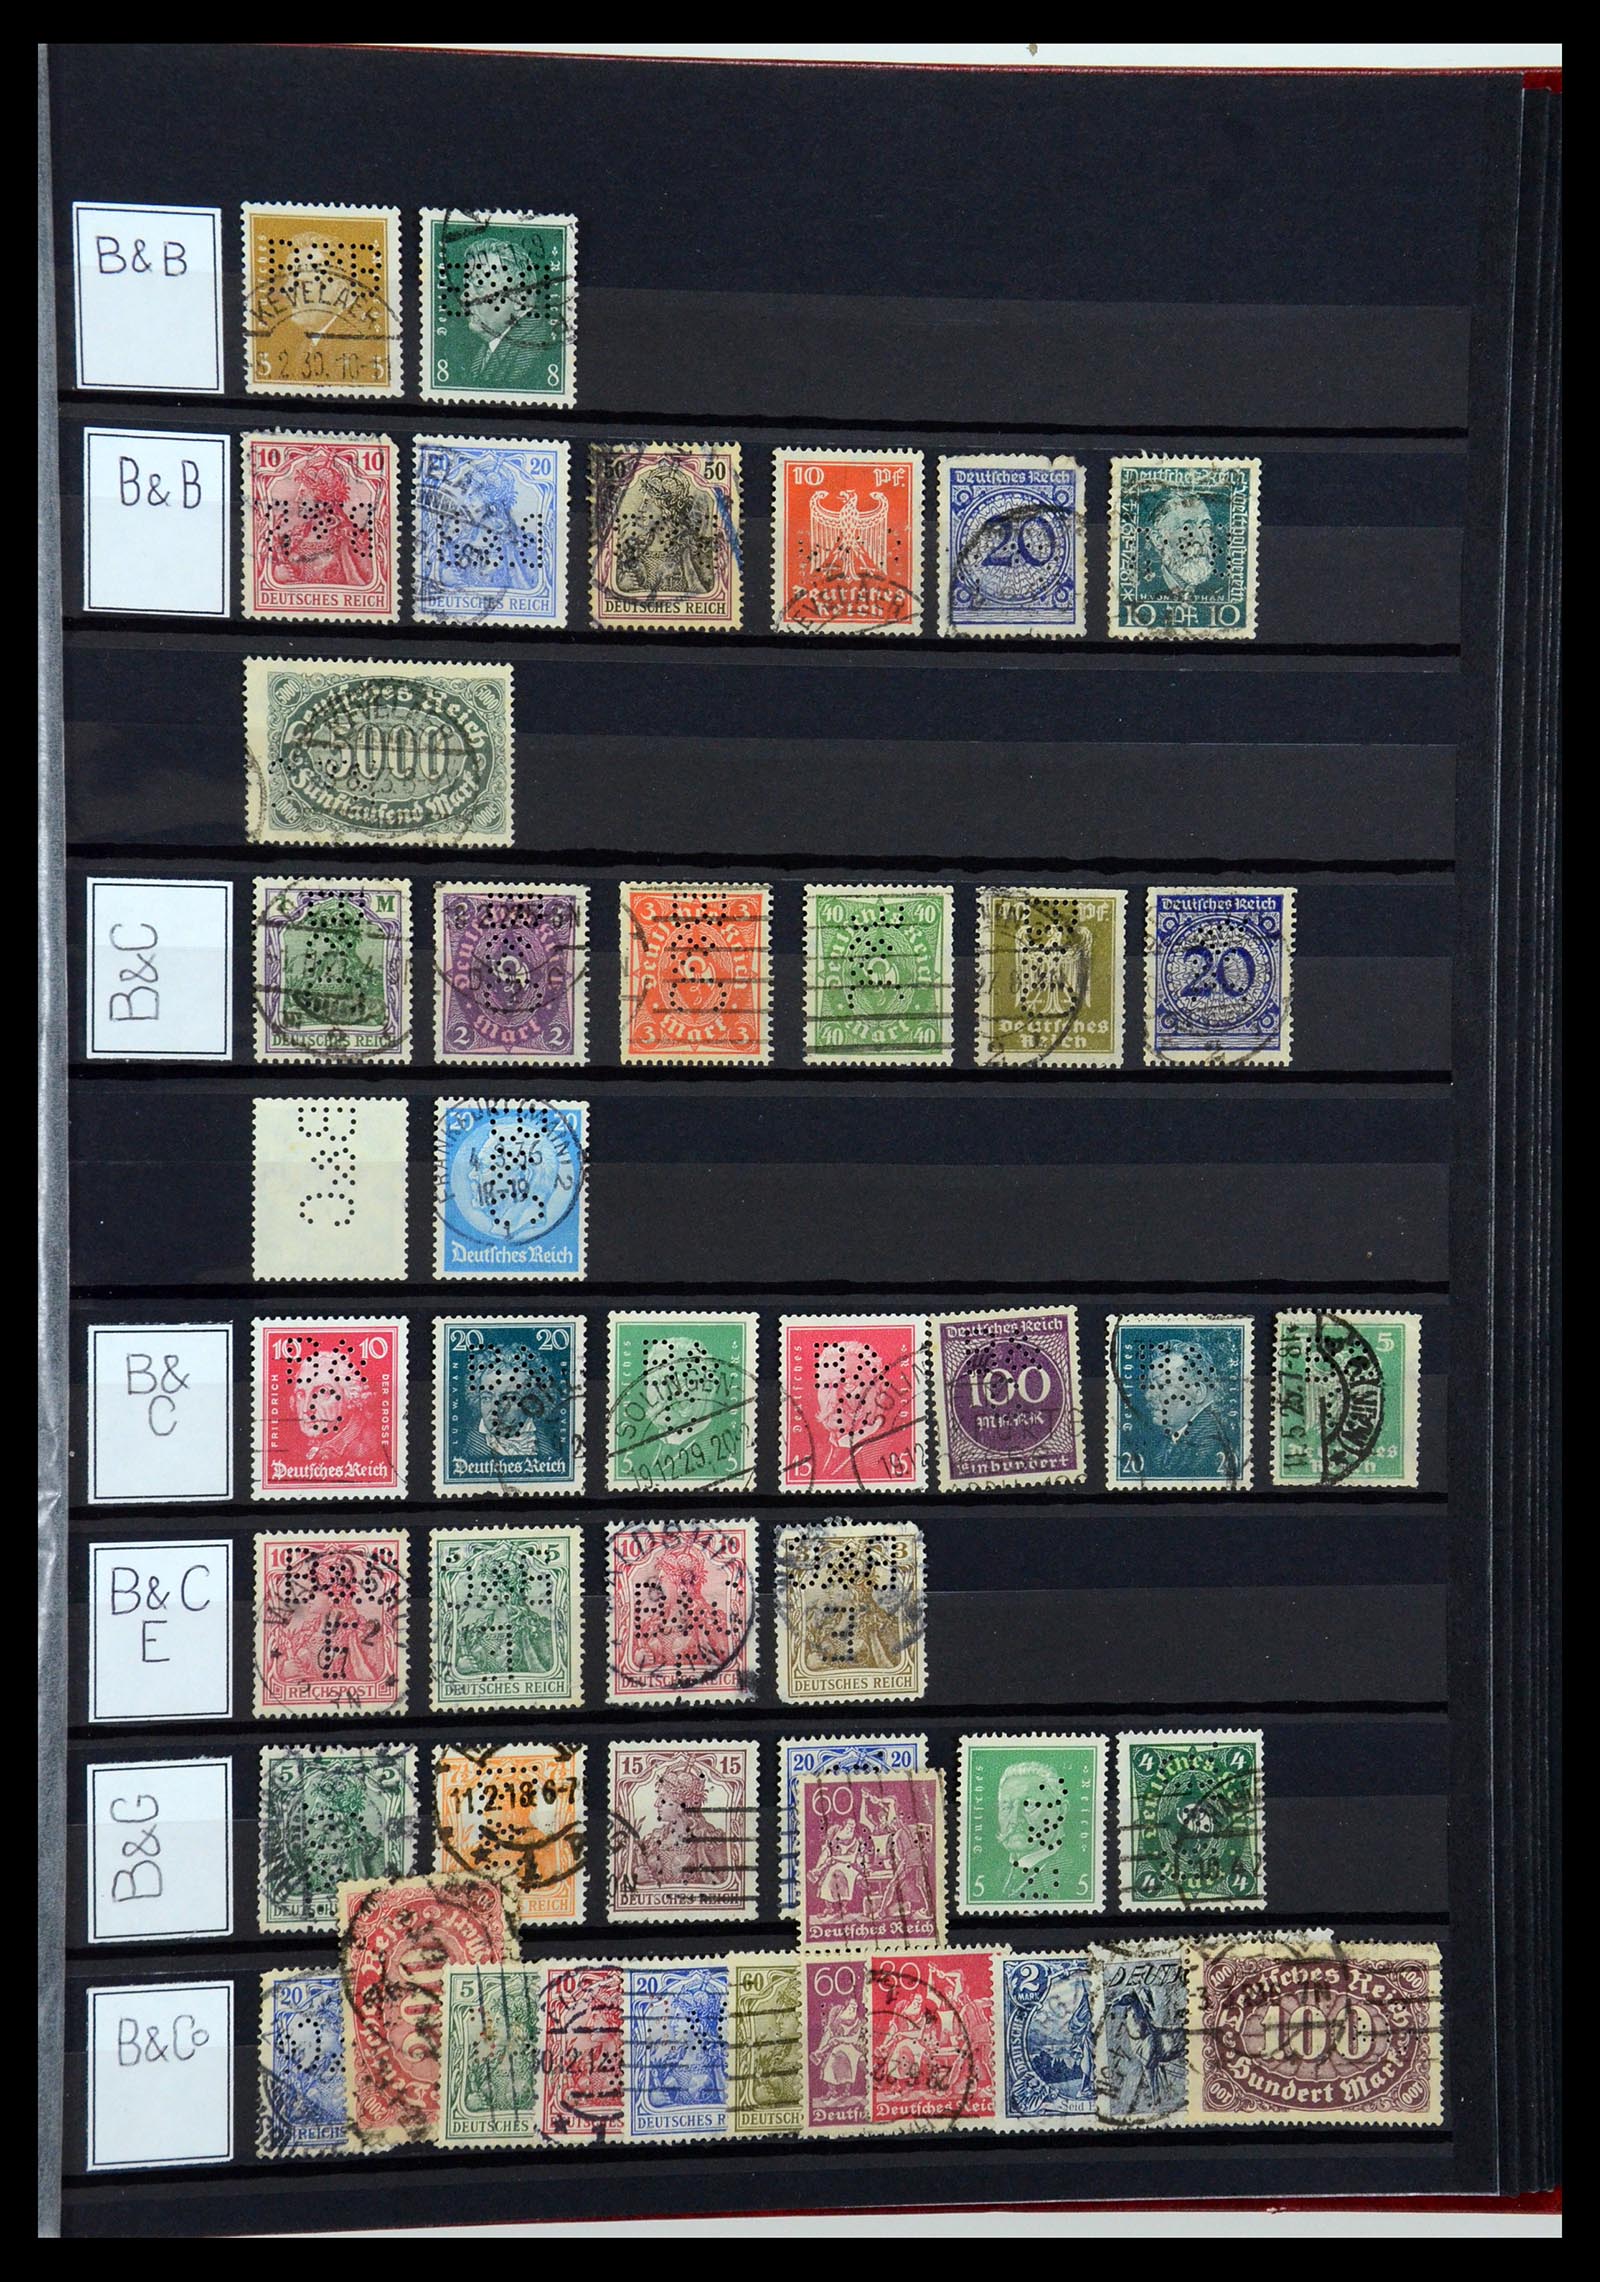 36405 051 - Stamp collection 36405 German Reich perfins 1880-1945.